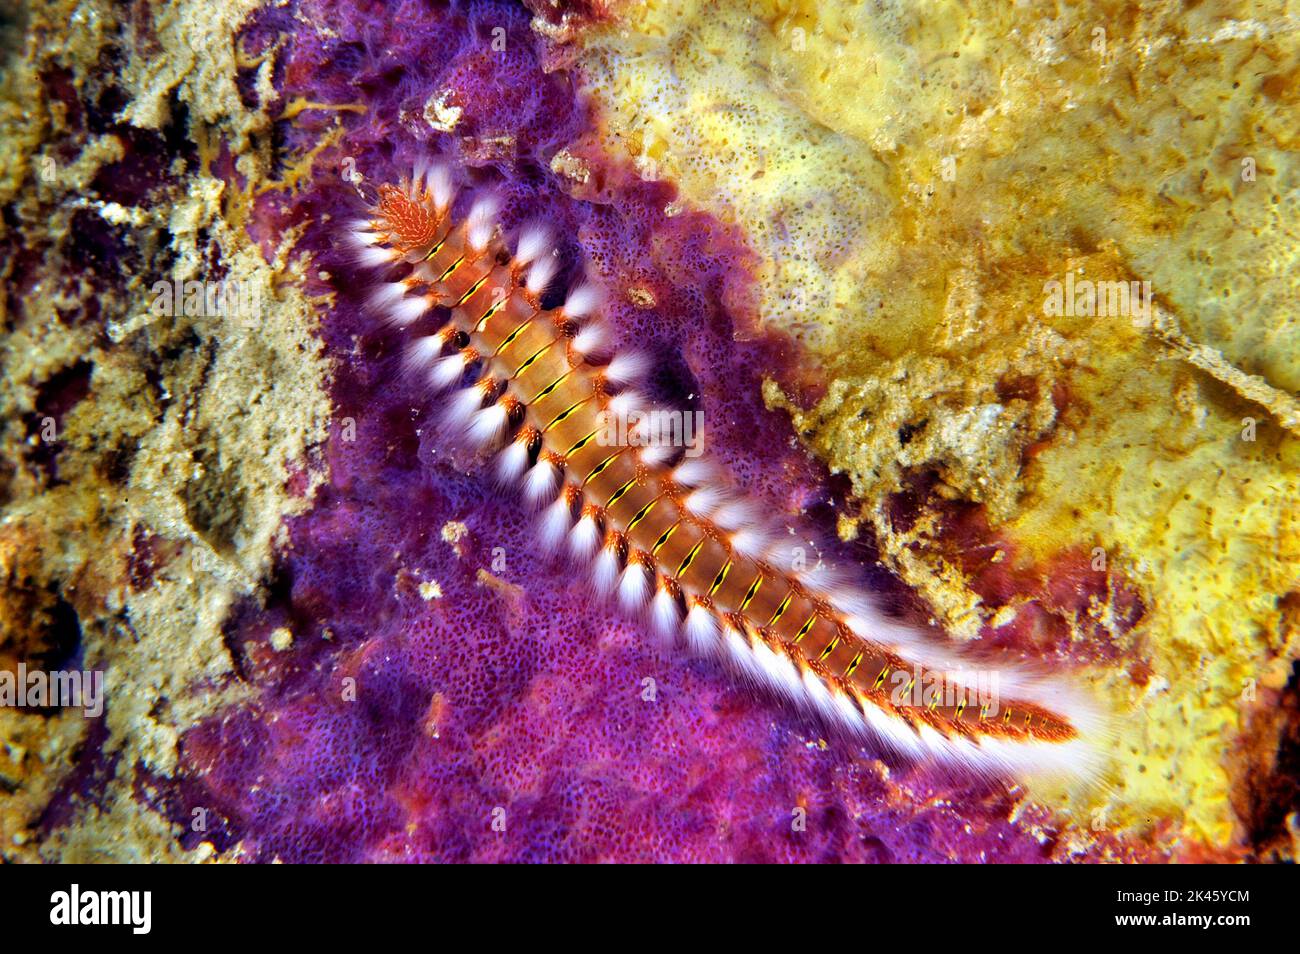 Una cerda hermosa pero peligrosa fireworm se arrastra en un parche de alimentación de esponja púrpura. Este es un gusano muy venenoso. Foto de stock